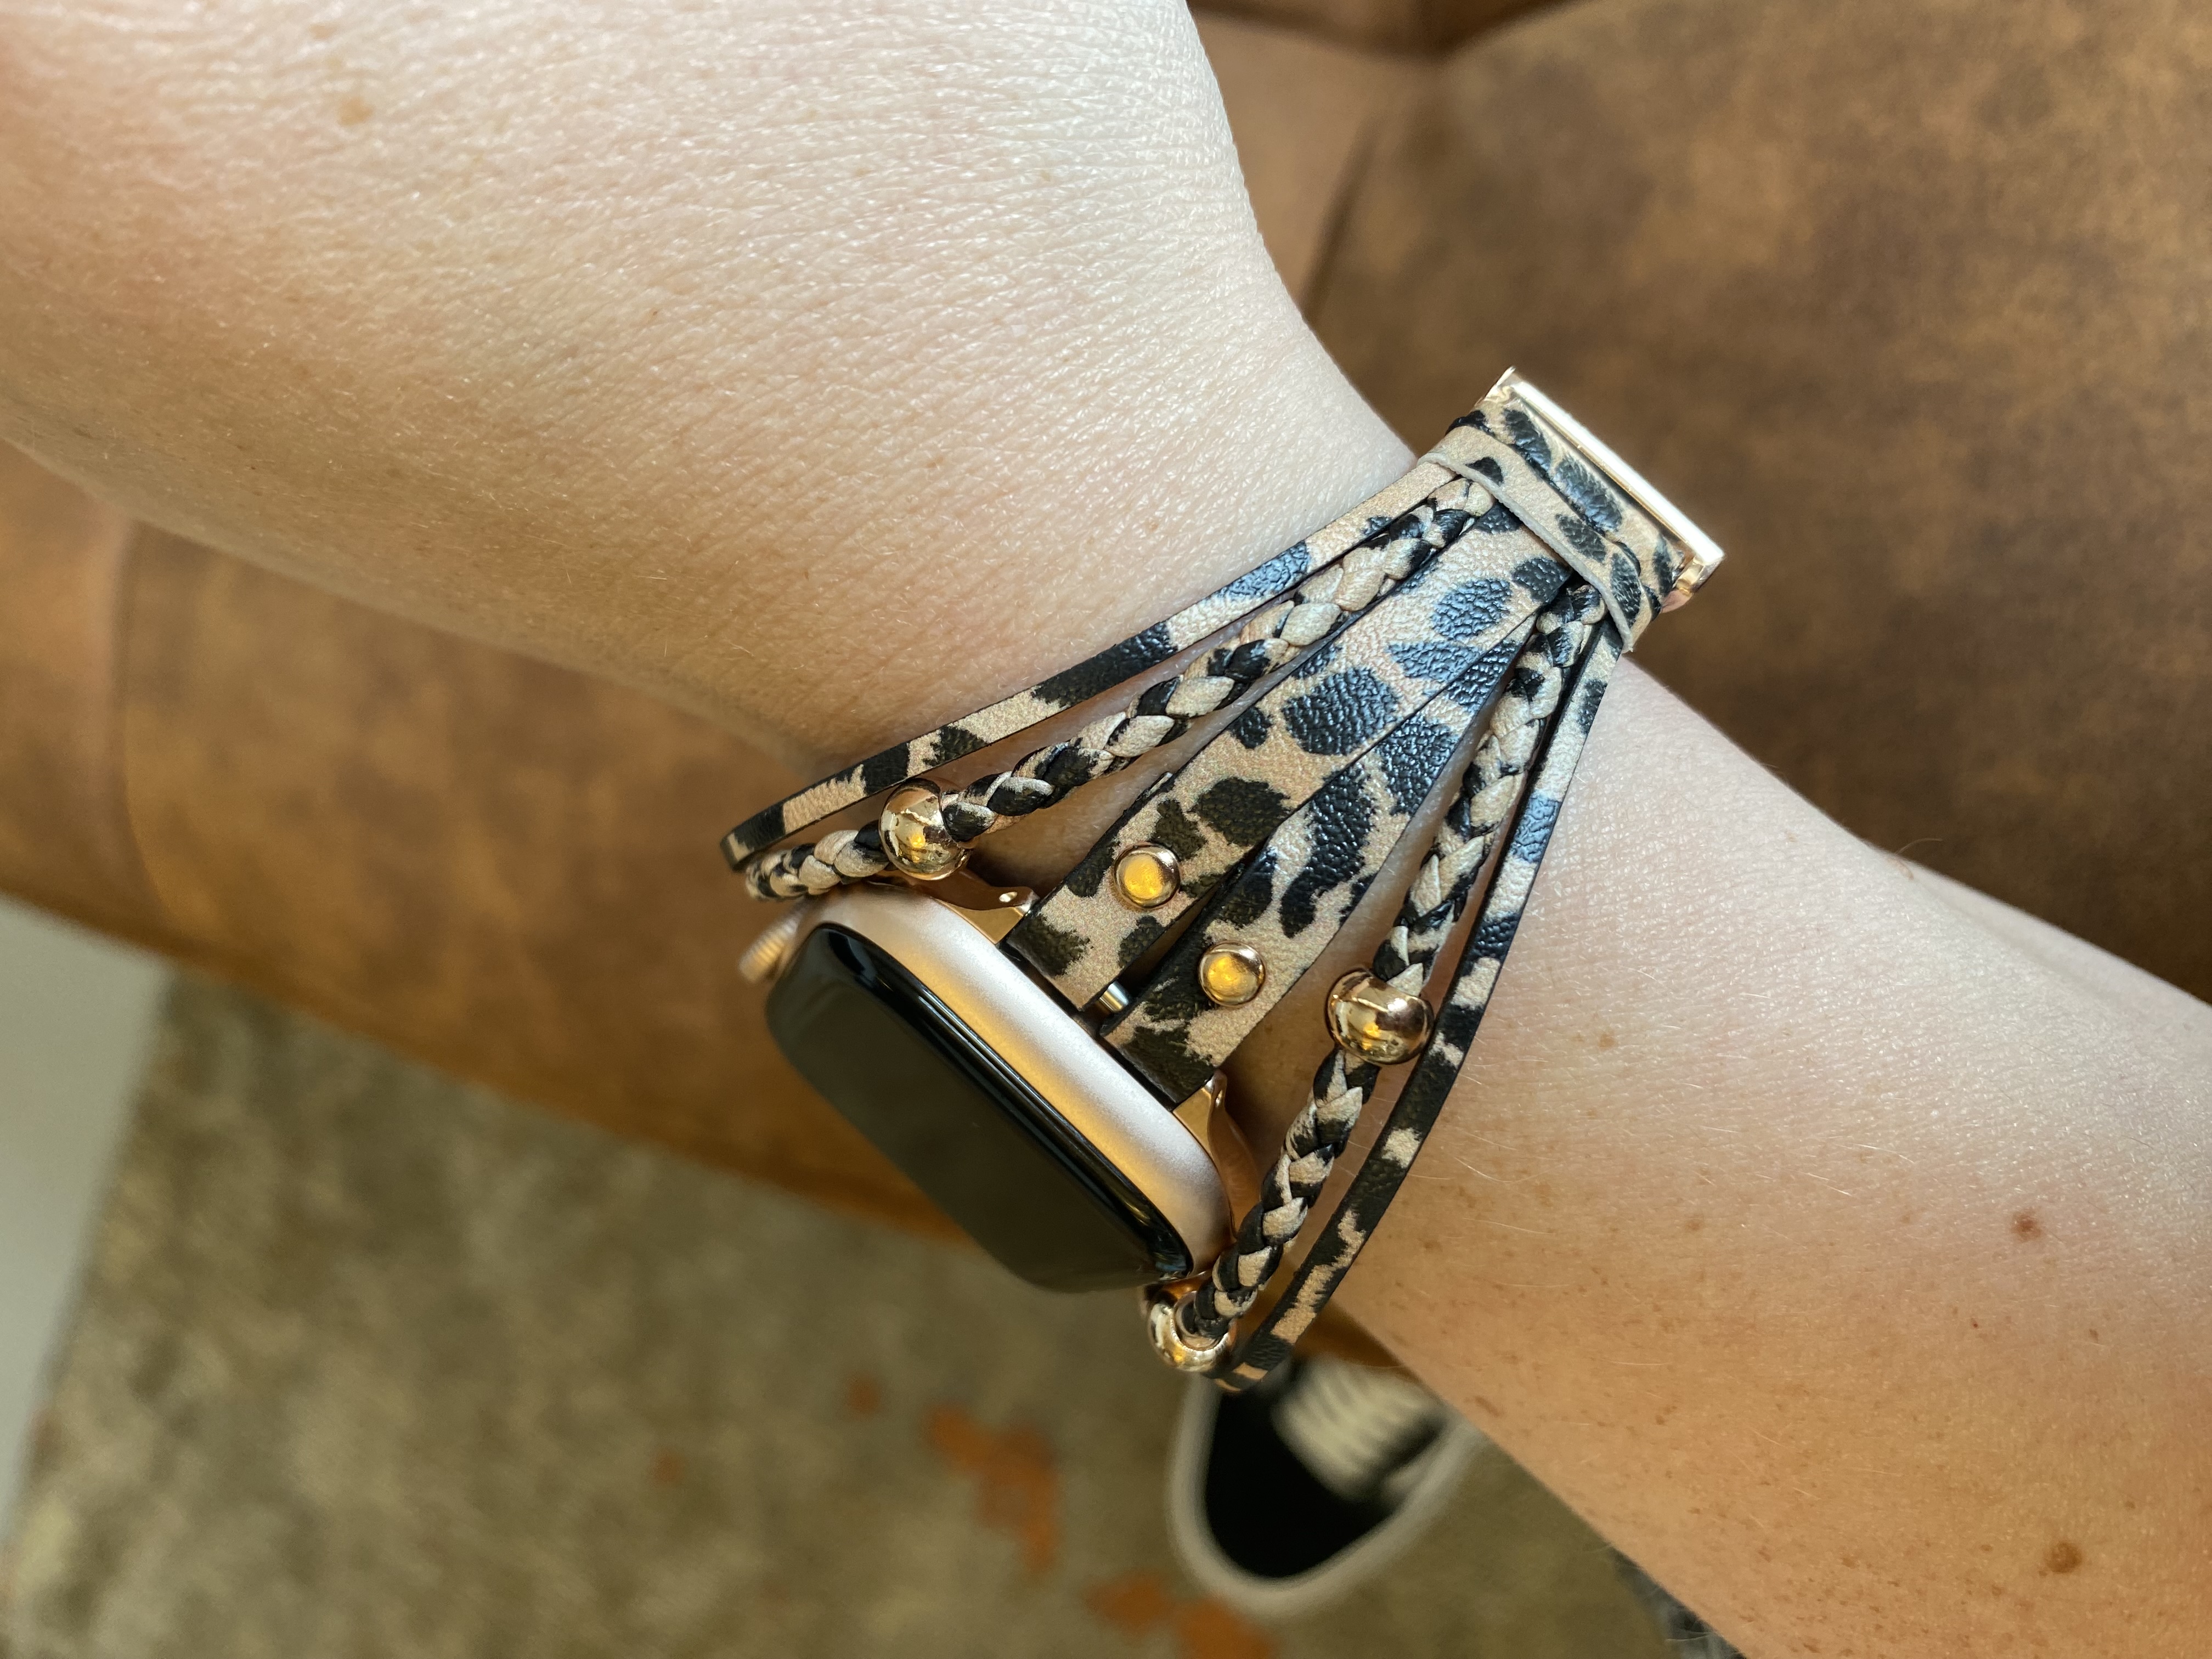 Apple Watch leren sieraden band - luipaard